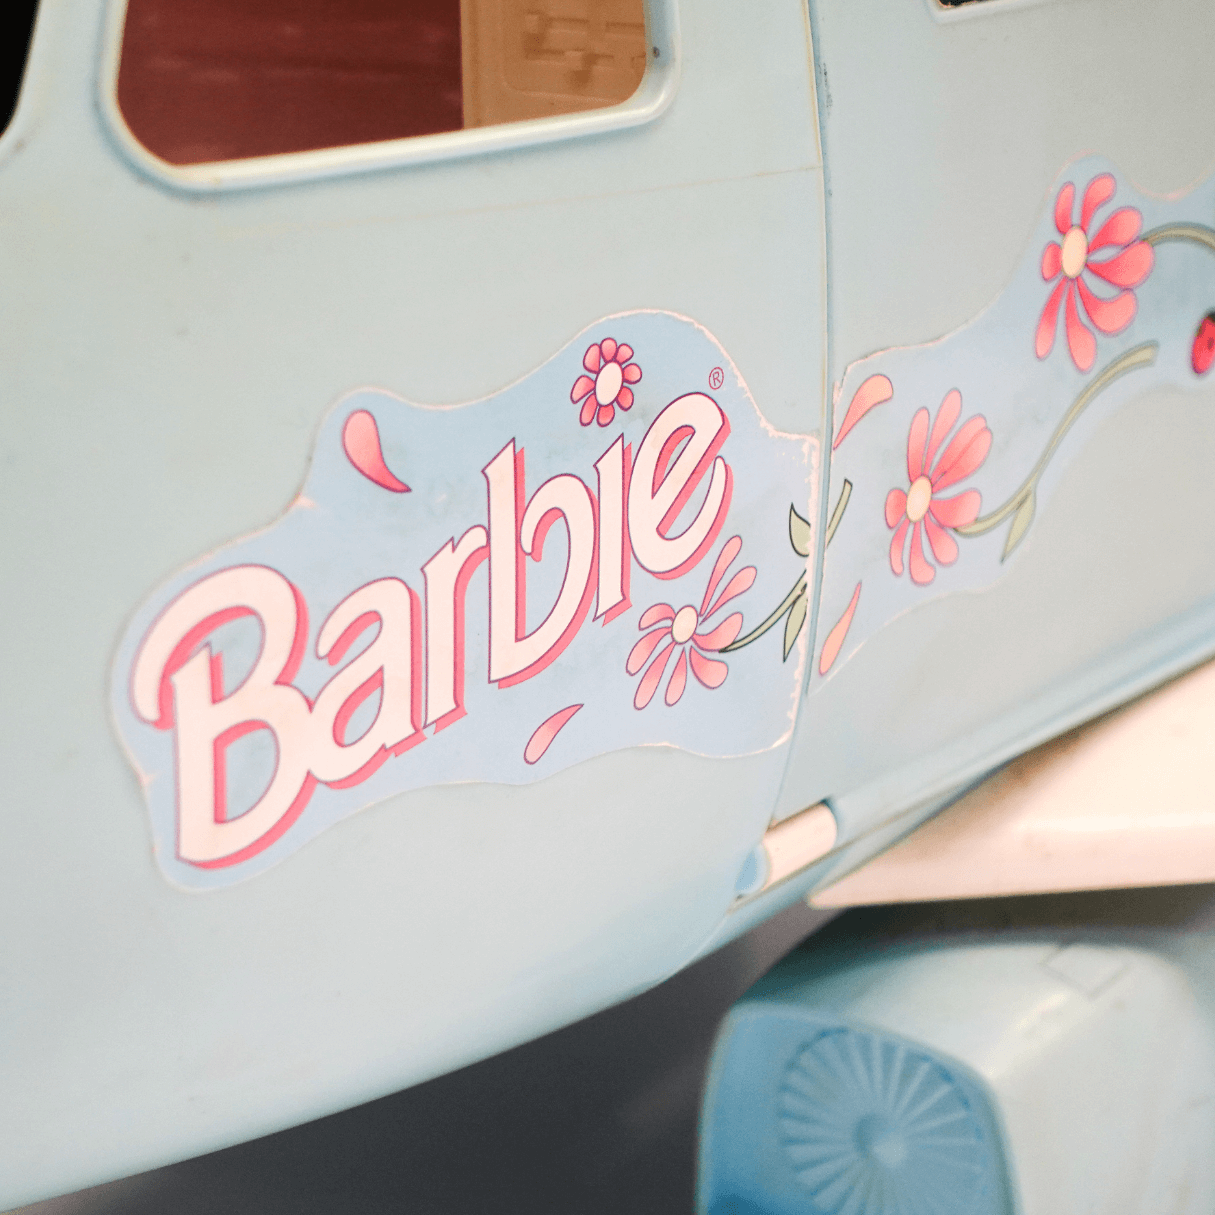 Avião Barbie Original da Mattel de 1999